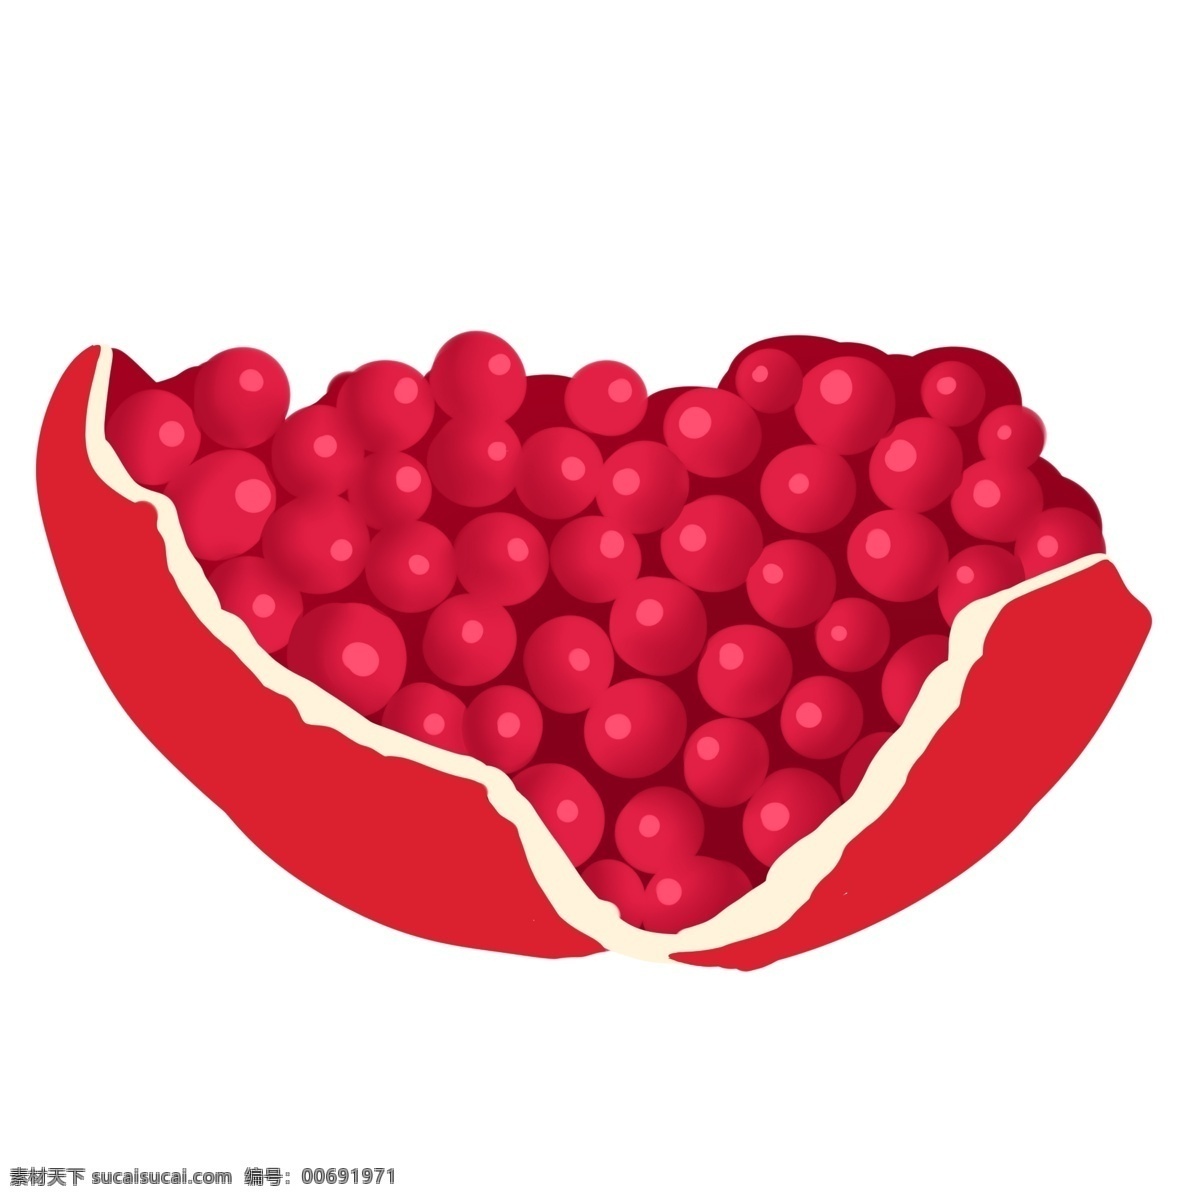 红色 新鲜 石榴 果肉 红色的石榴 新鲜的石榴 石榴插画 水果 营养 健康 切开的石榴 手绘的石榴